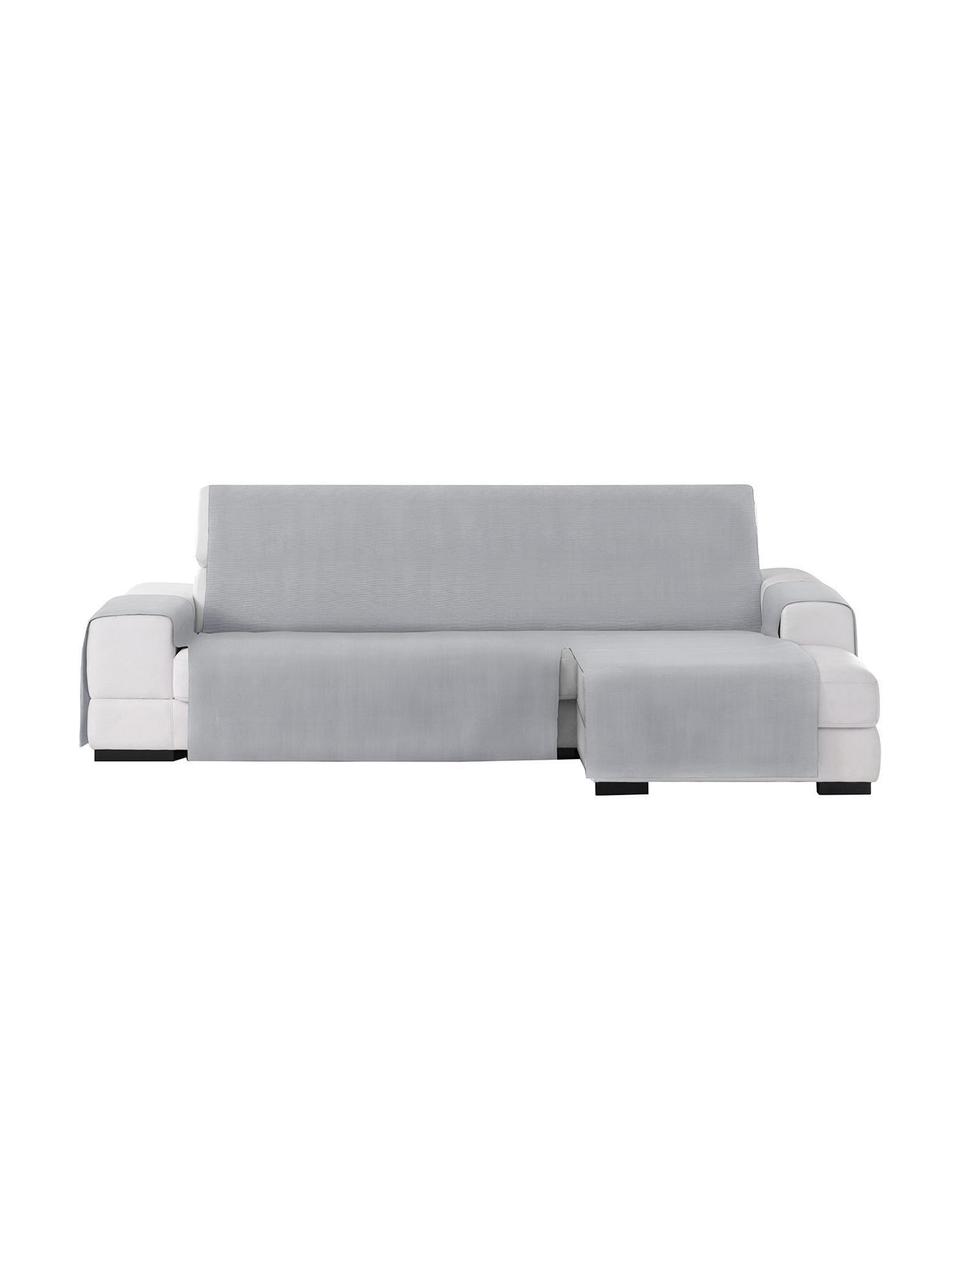 Narzuta na sofę narożną Levante, 65% bawełna, 35% poliester, Szary, S 150 x D 240 cm, prawostronna